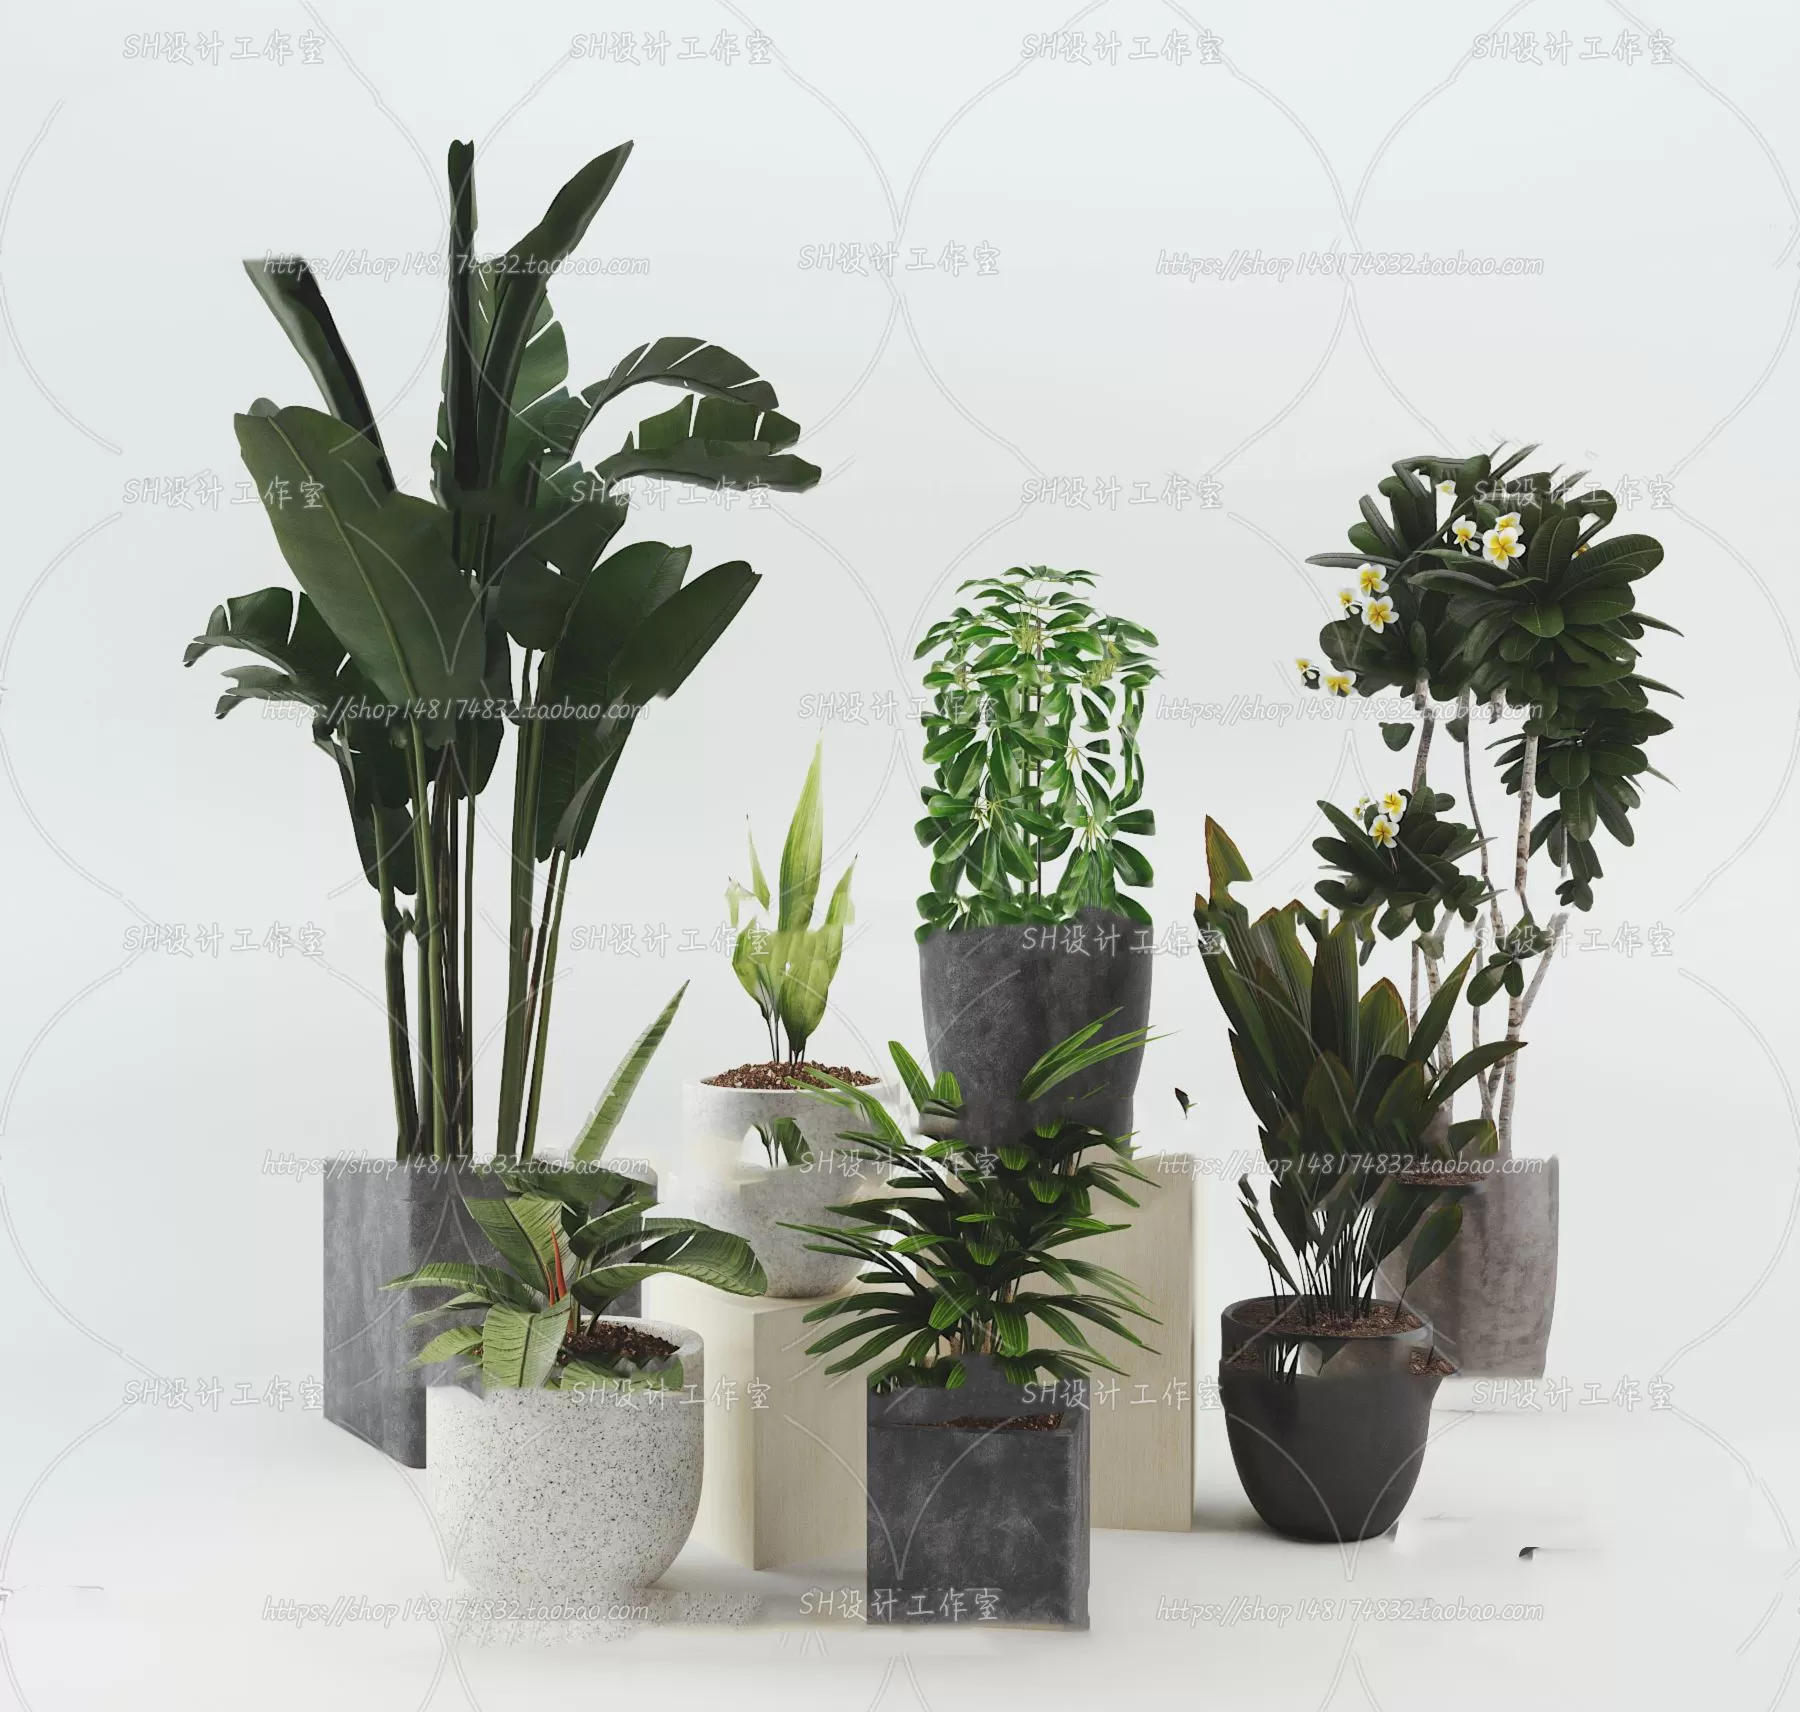 PLANT 3D MODELS – 076